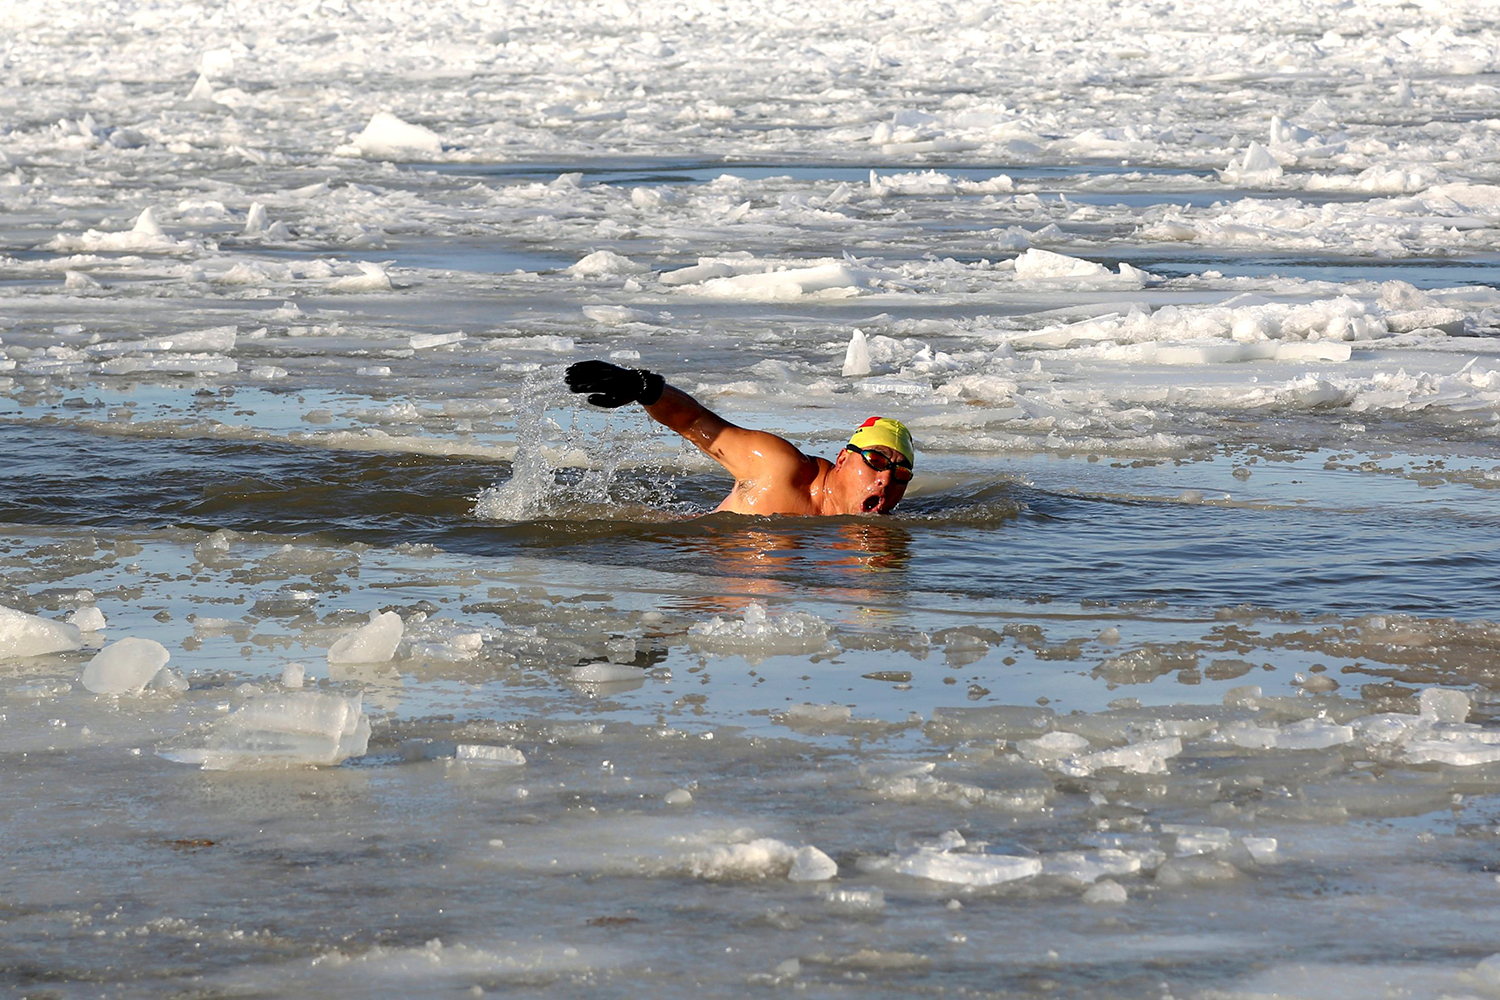 Nadadores desafían el tiempo nadando en aguas heladas